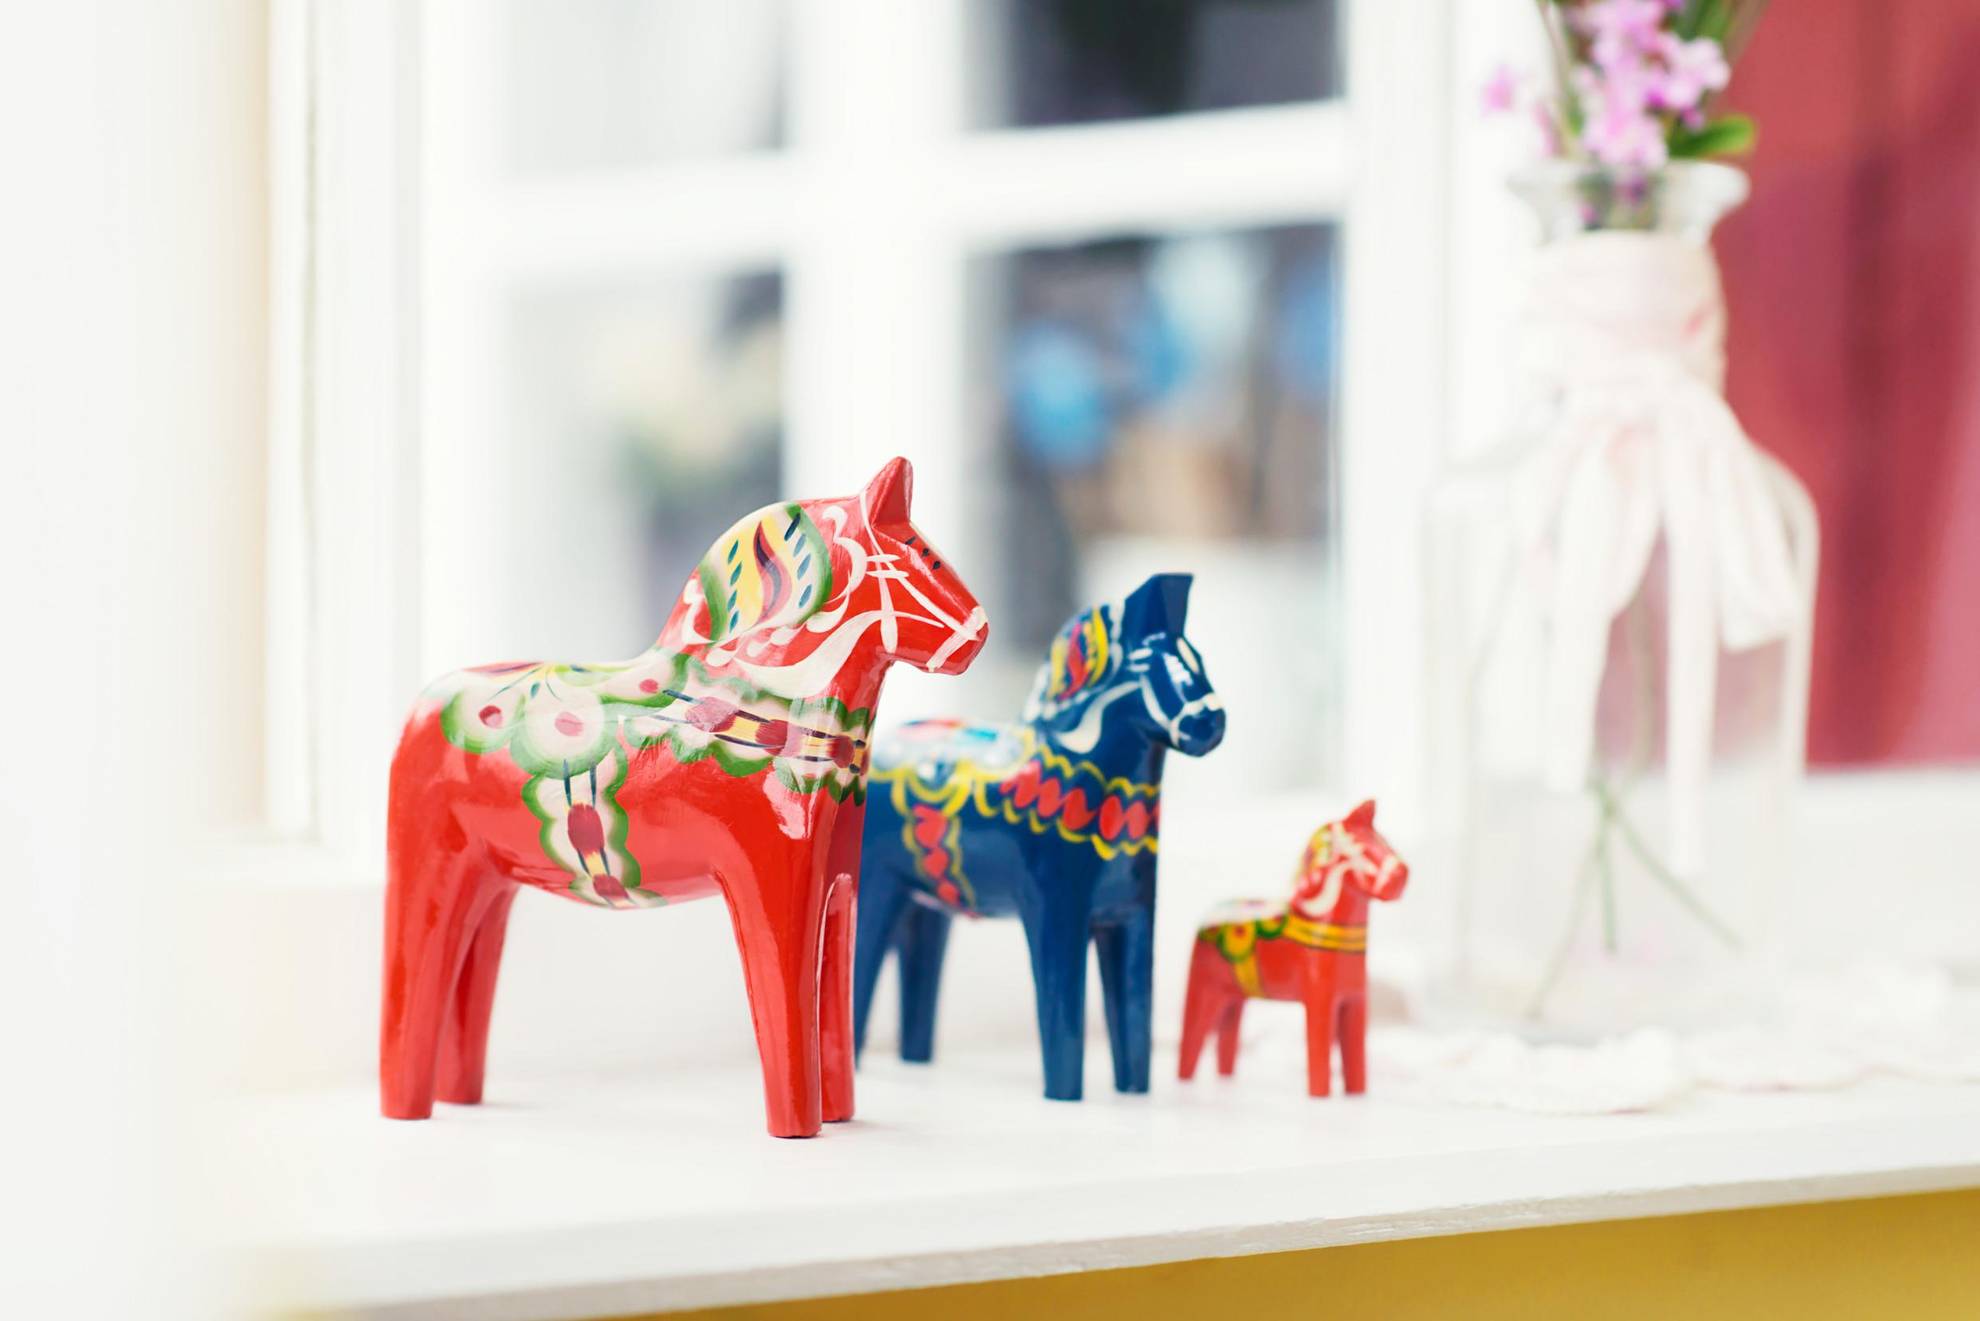 Drie Dala-paarden in verschillende maten op een vensterbank. De grootste en de kleinste zijn in rood geschilderd en de middelste in blauw met kubit-versieringen.